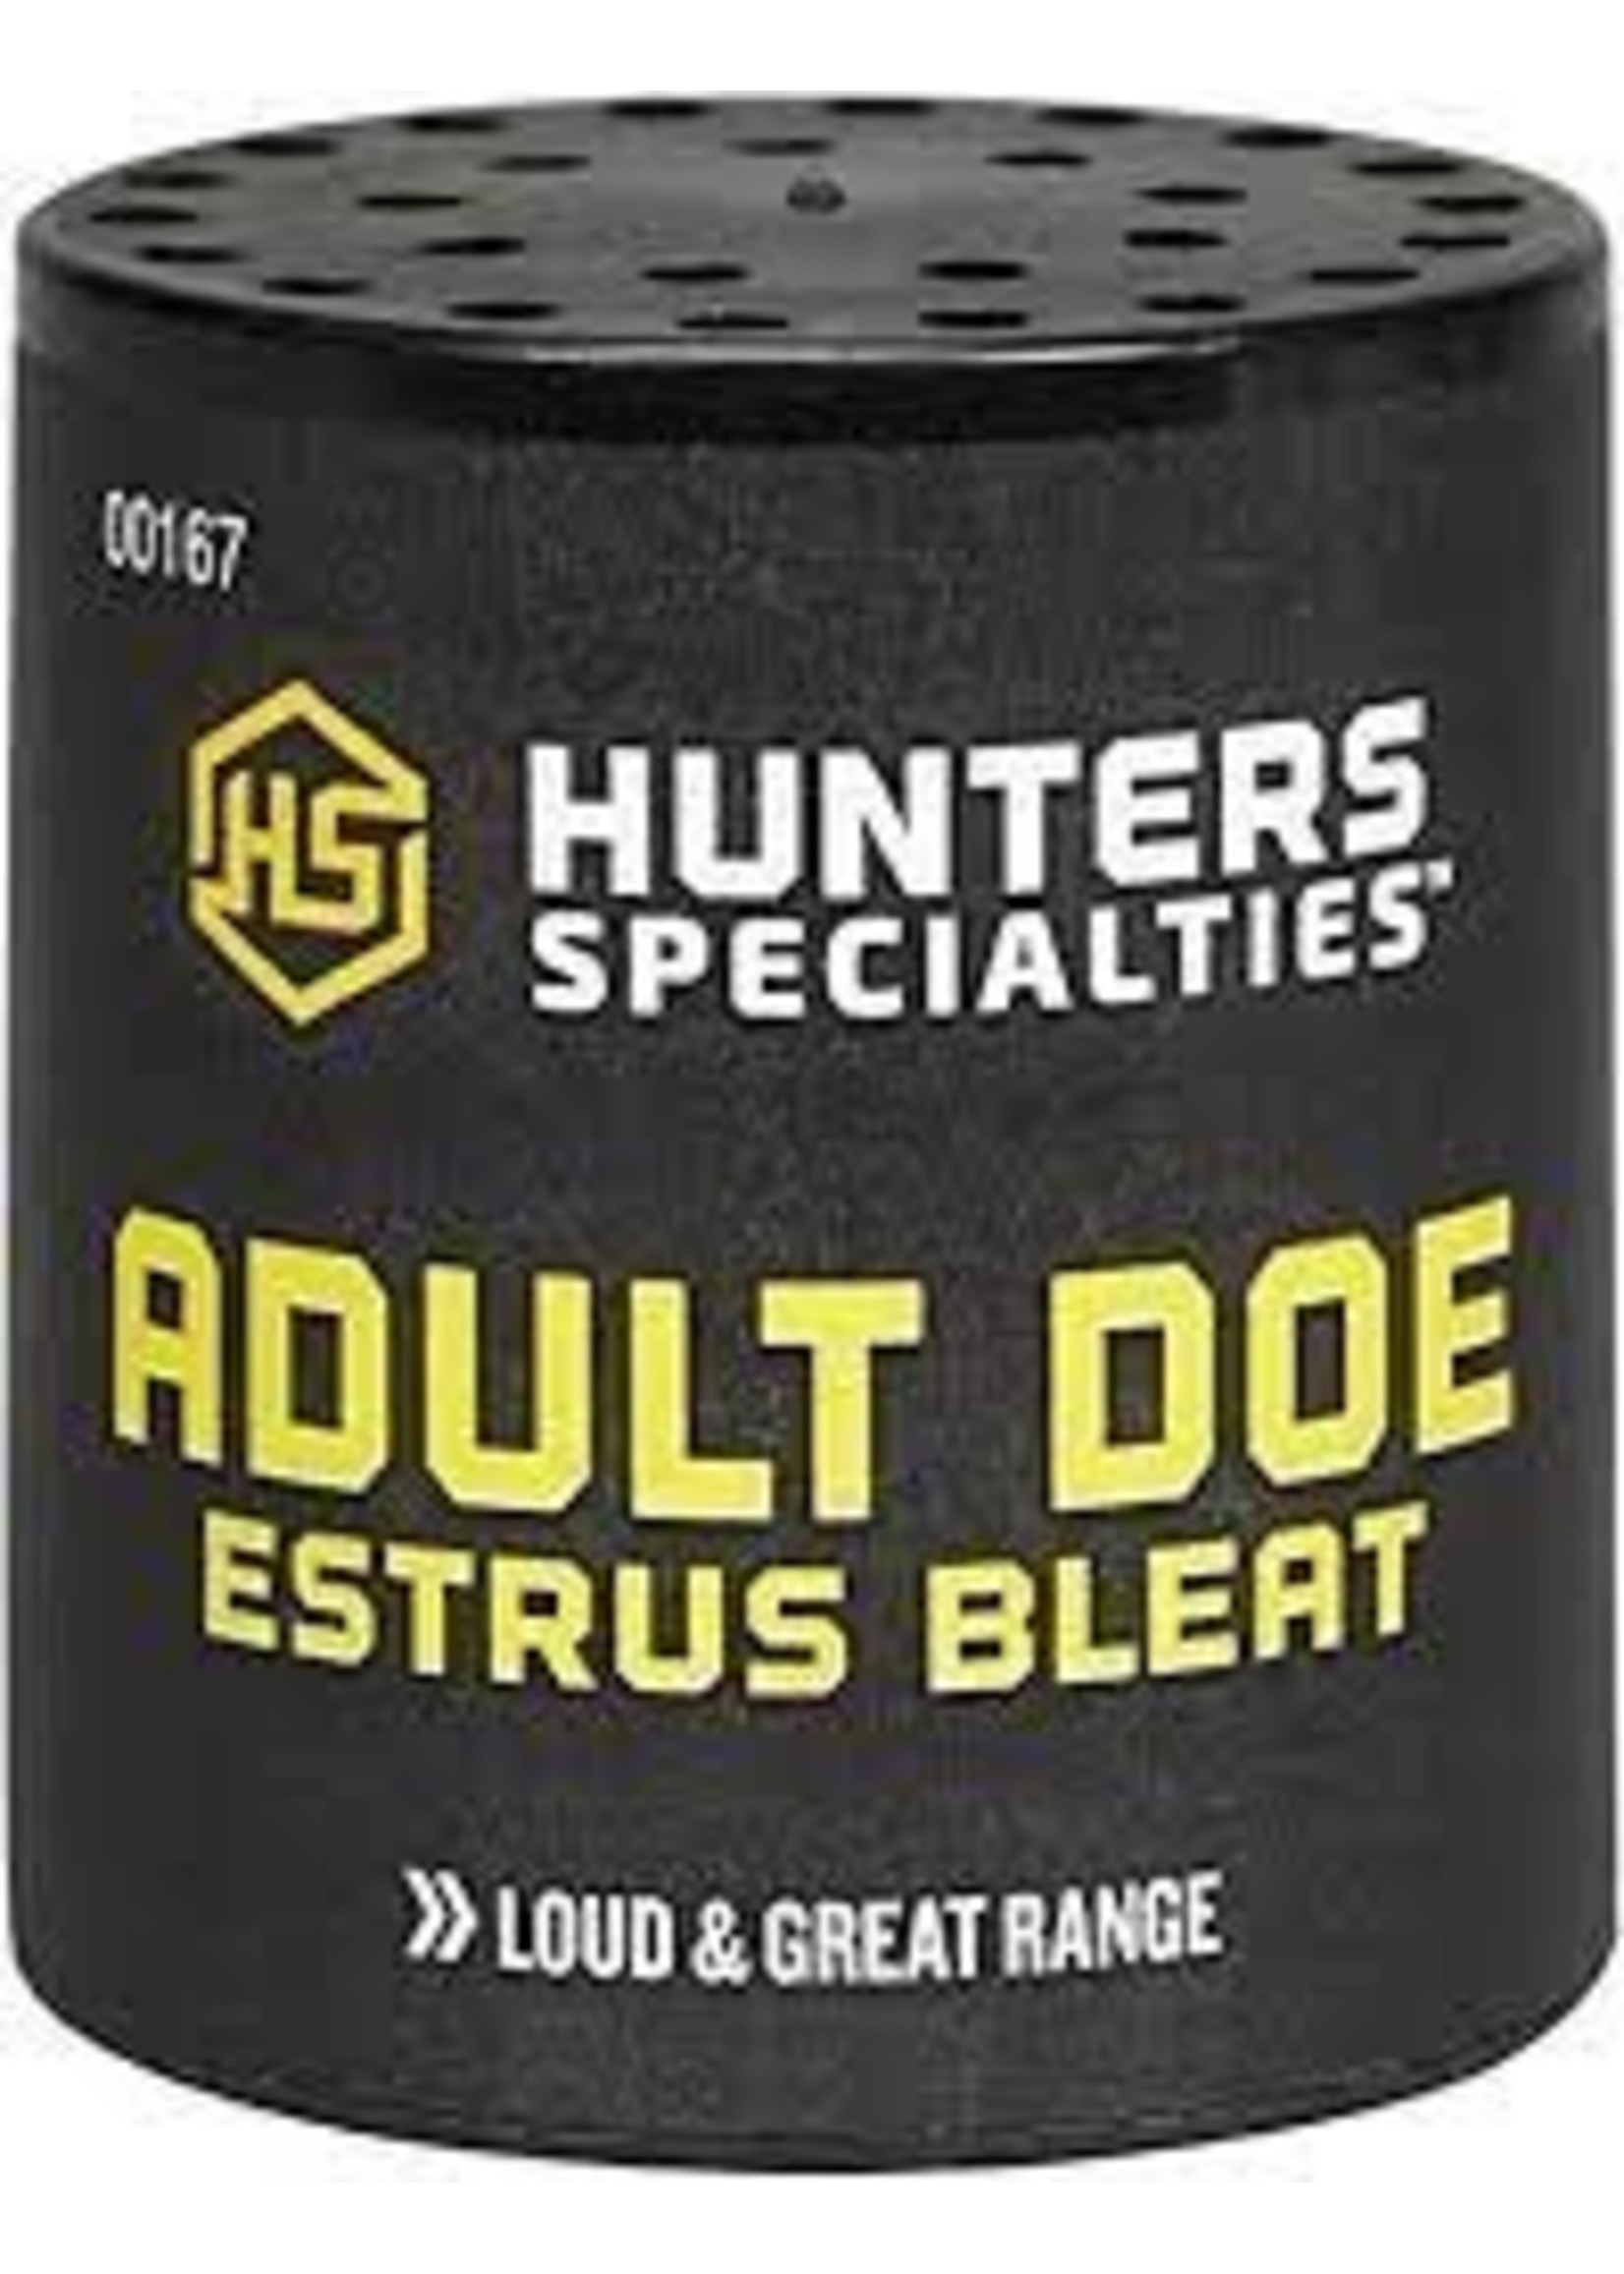 Hunters Specialties adult doe estrus bleat deer call